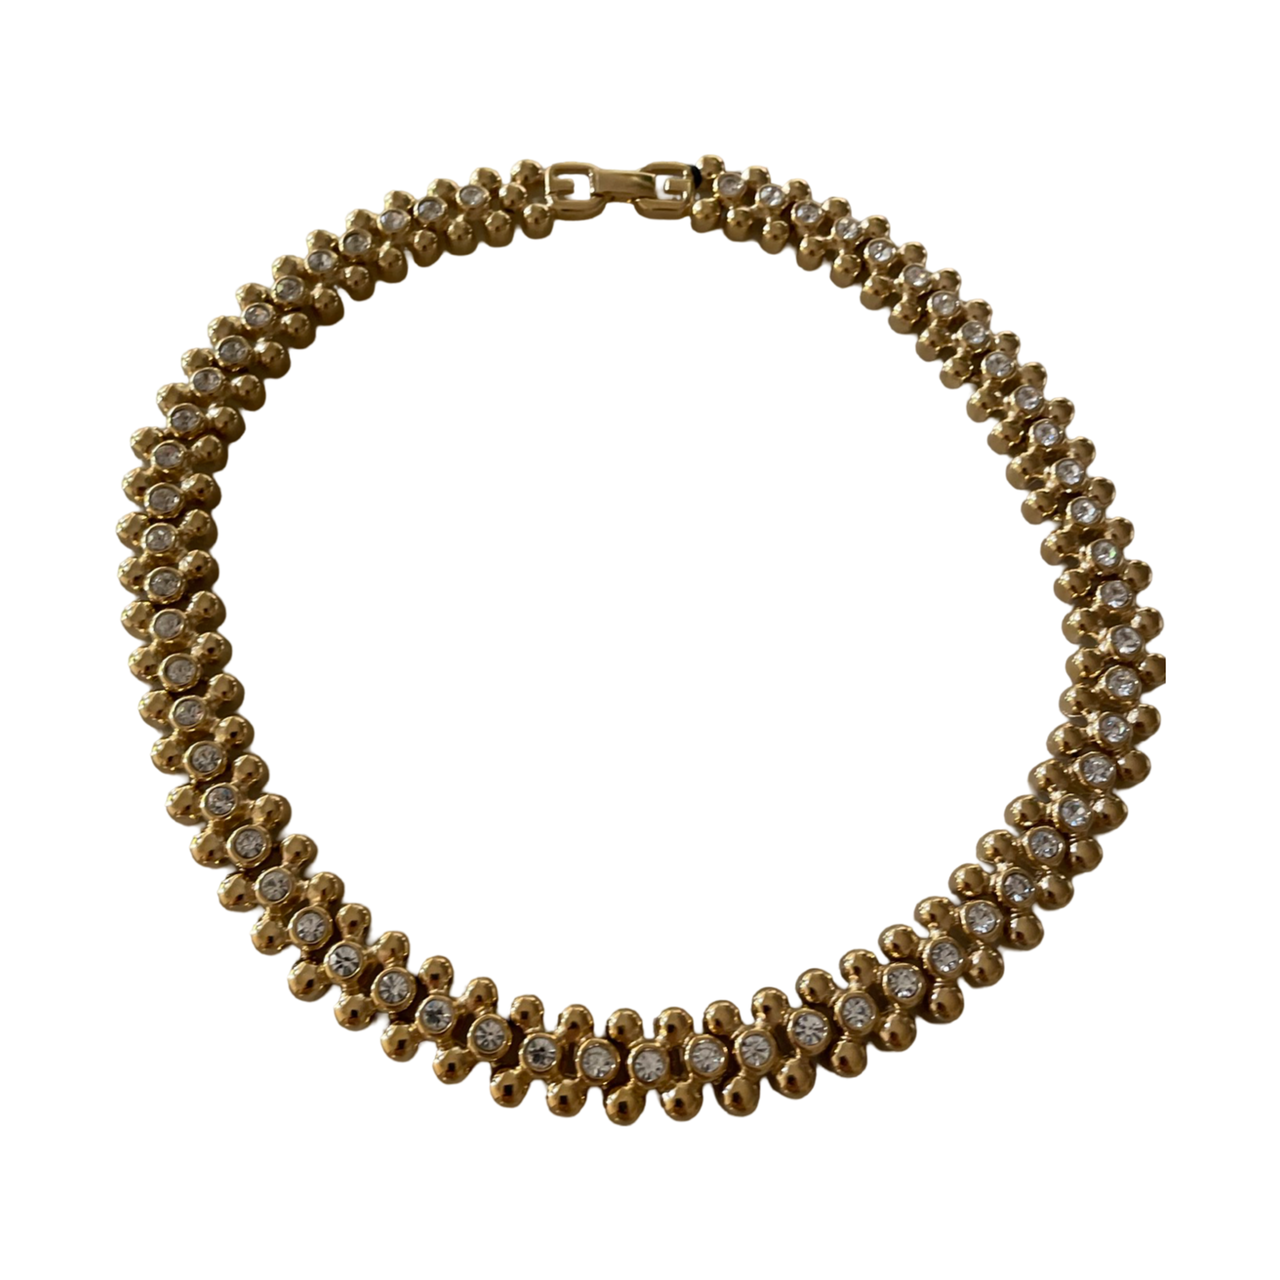 Givenchy 80s diamanté necklace choker